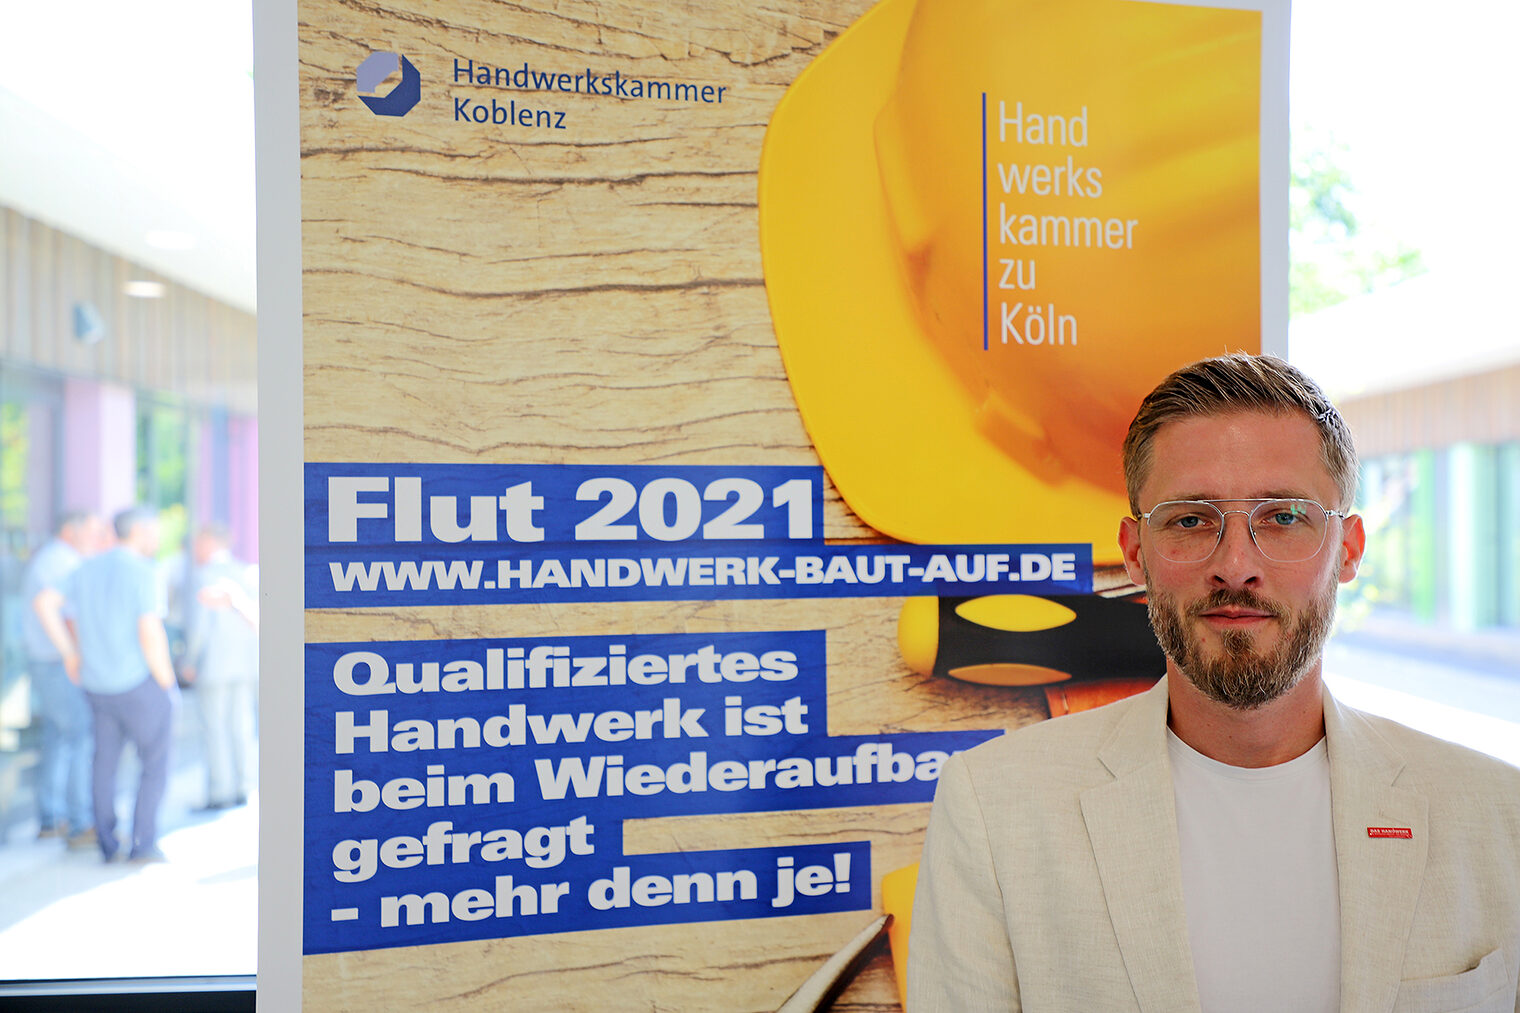 Die Initiative „HANDWERKimWIEDERAUFBAU“ wird bei der Handwerkskammer zu Köln von Marius Siebenhaar koordiniert. Auf www.handwerk-baut-auf.de sind über 1.950 Handwerksbetriebe aus ganz Deutschland registriert. Im vergangenen Jahr wurden ca. 2.800 Webseiten von Handwerksbetrieben über die Plattform aufgerufen.